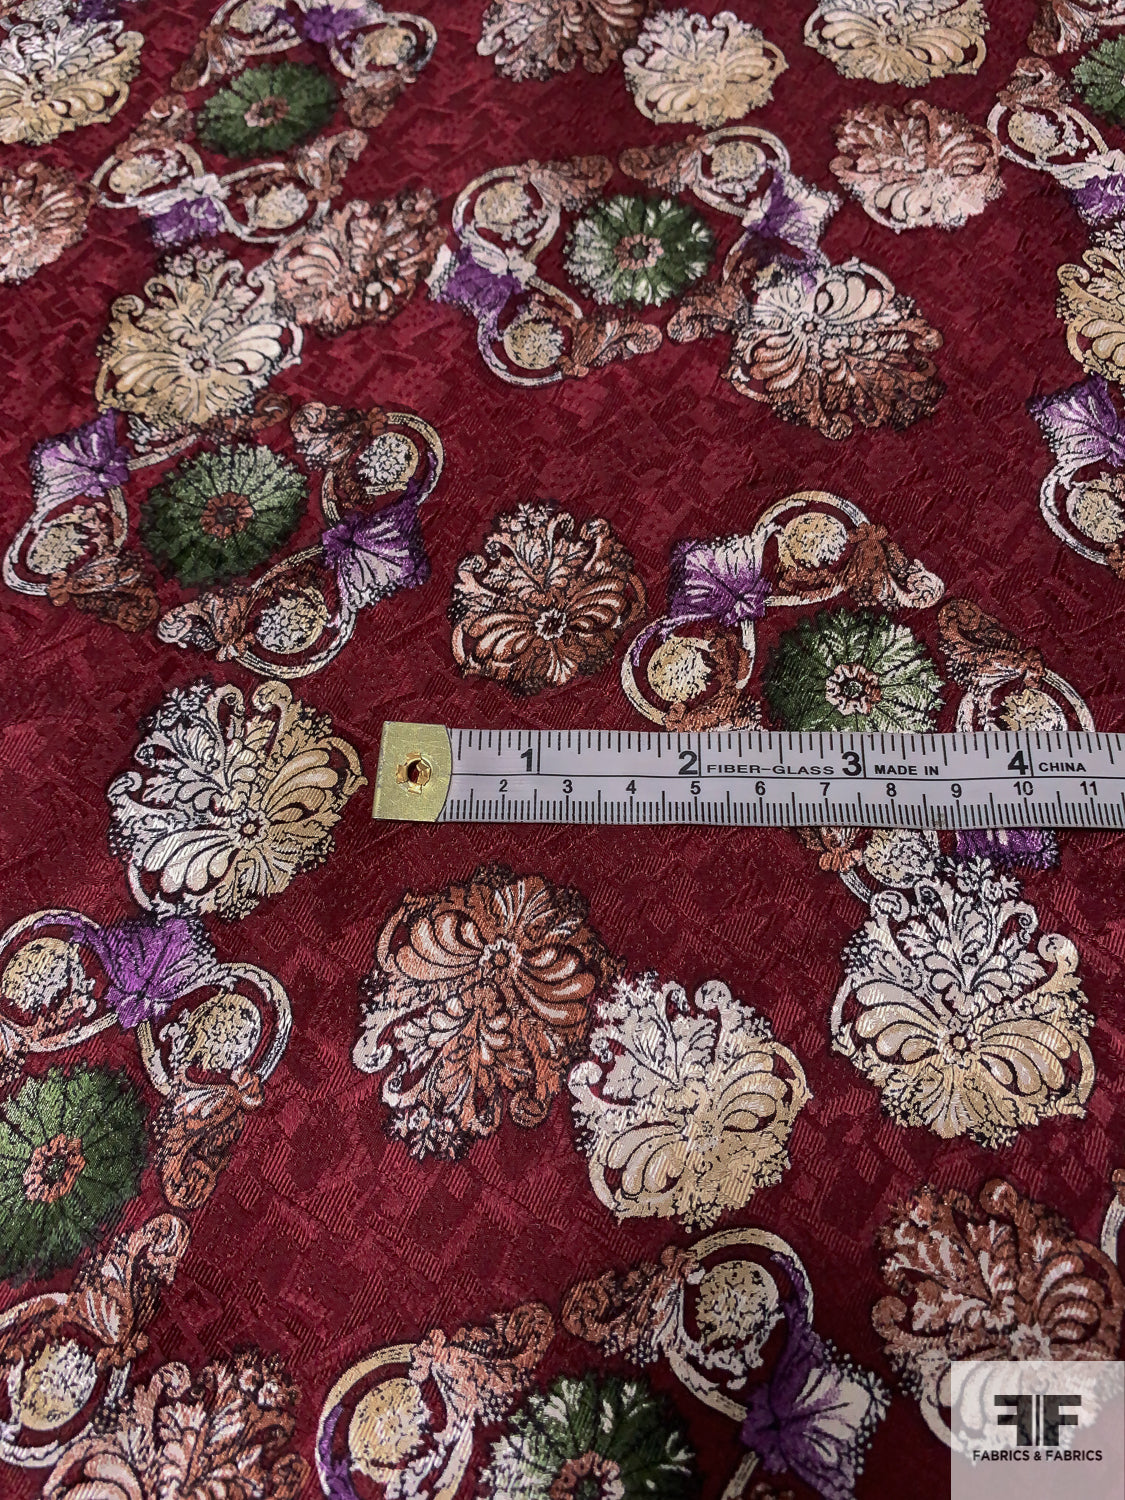 Ornate Floral Printed Vintage Silk Jacquard - Maroon / Mossy Green / Brown